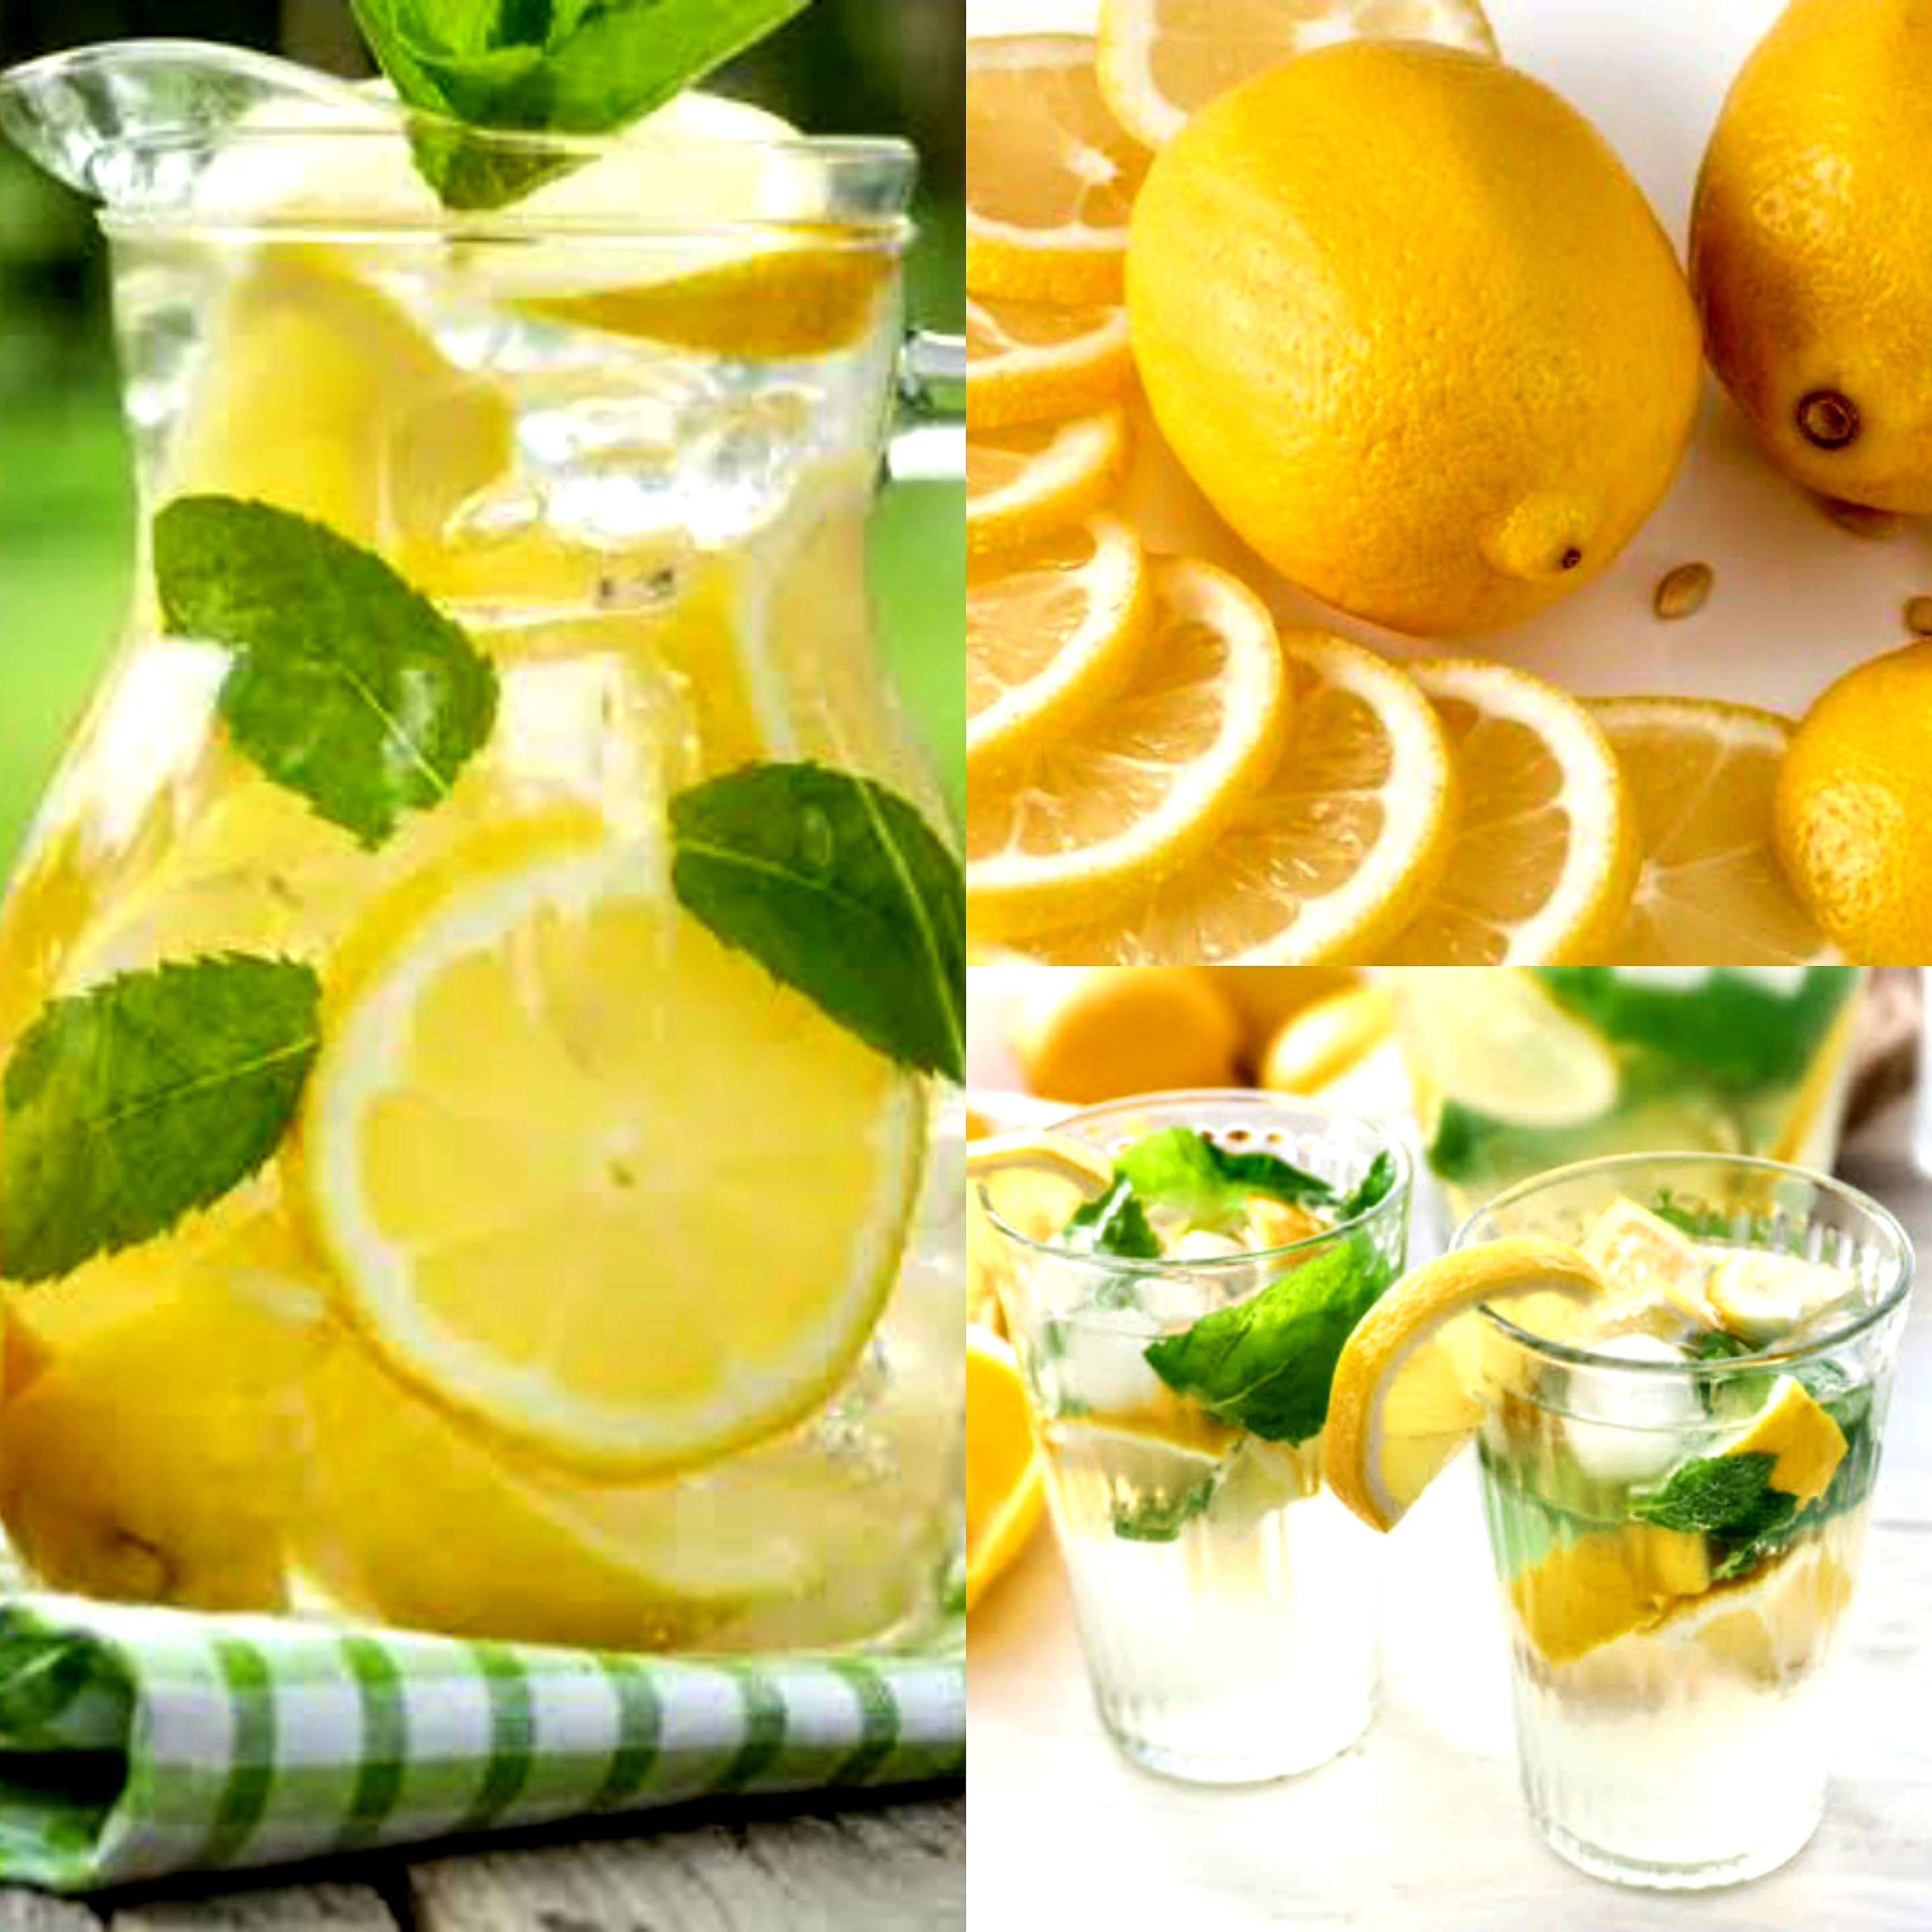 Imun Tubuh Paling Ampuh. Manfaat Lemon Bagi Kesehatan Jaga Stamina Setiap Kondisi